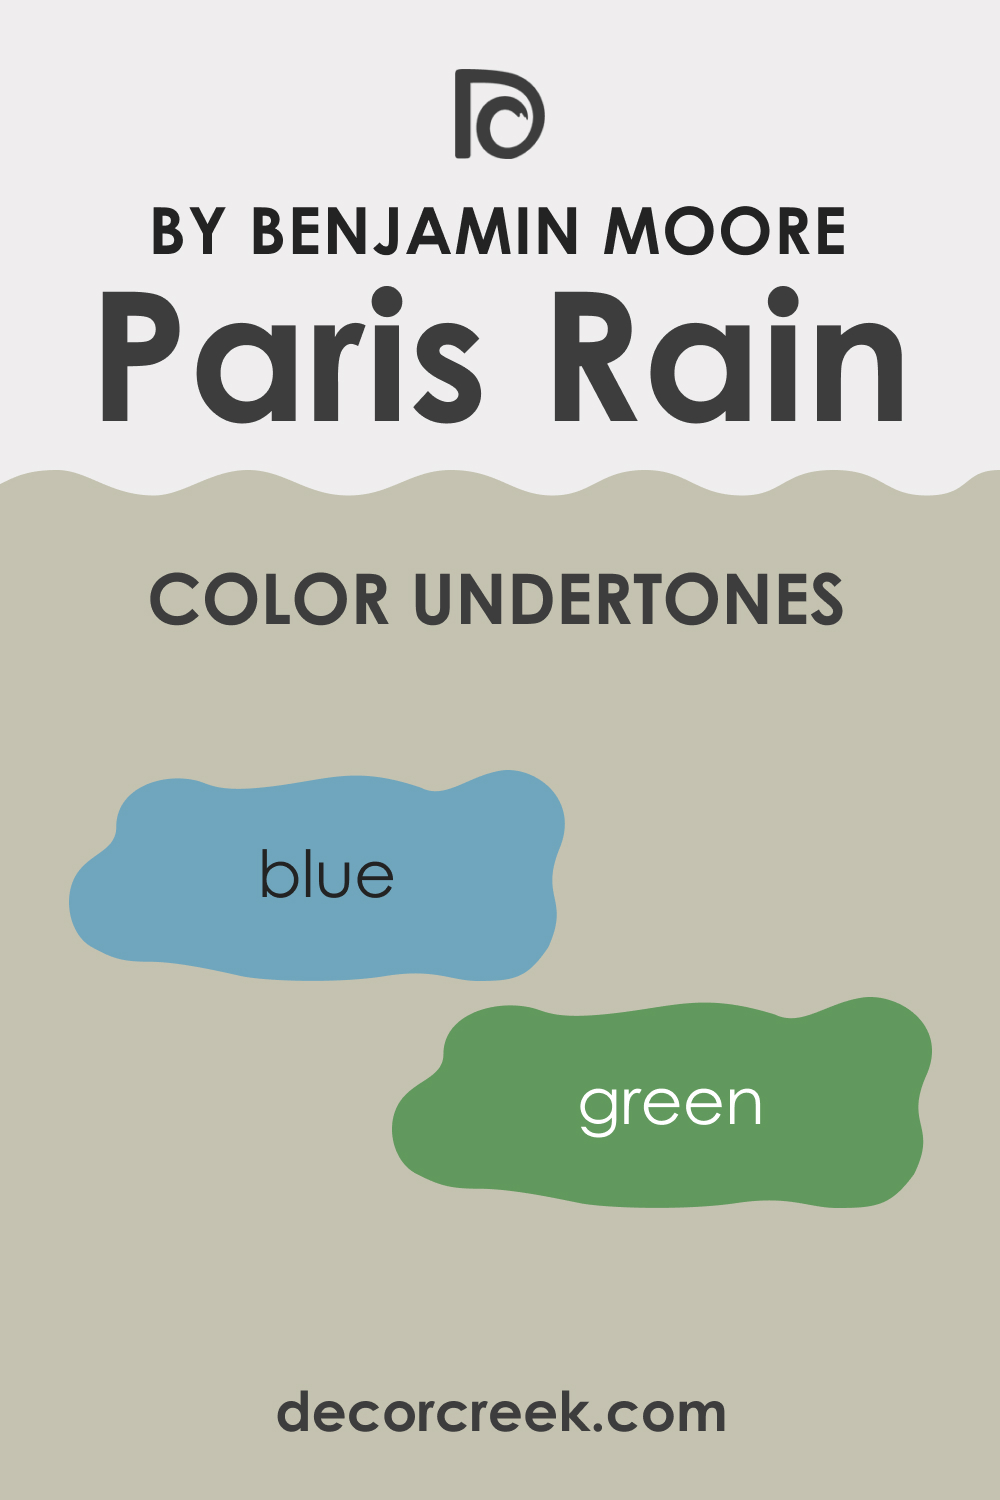 Undertones of Paris Rain 1501